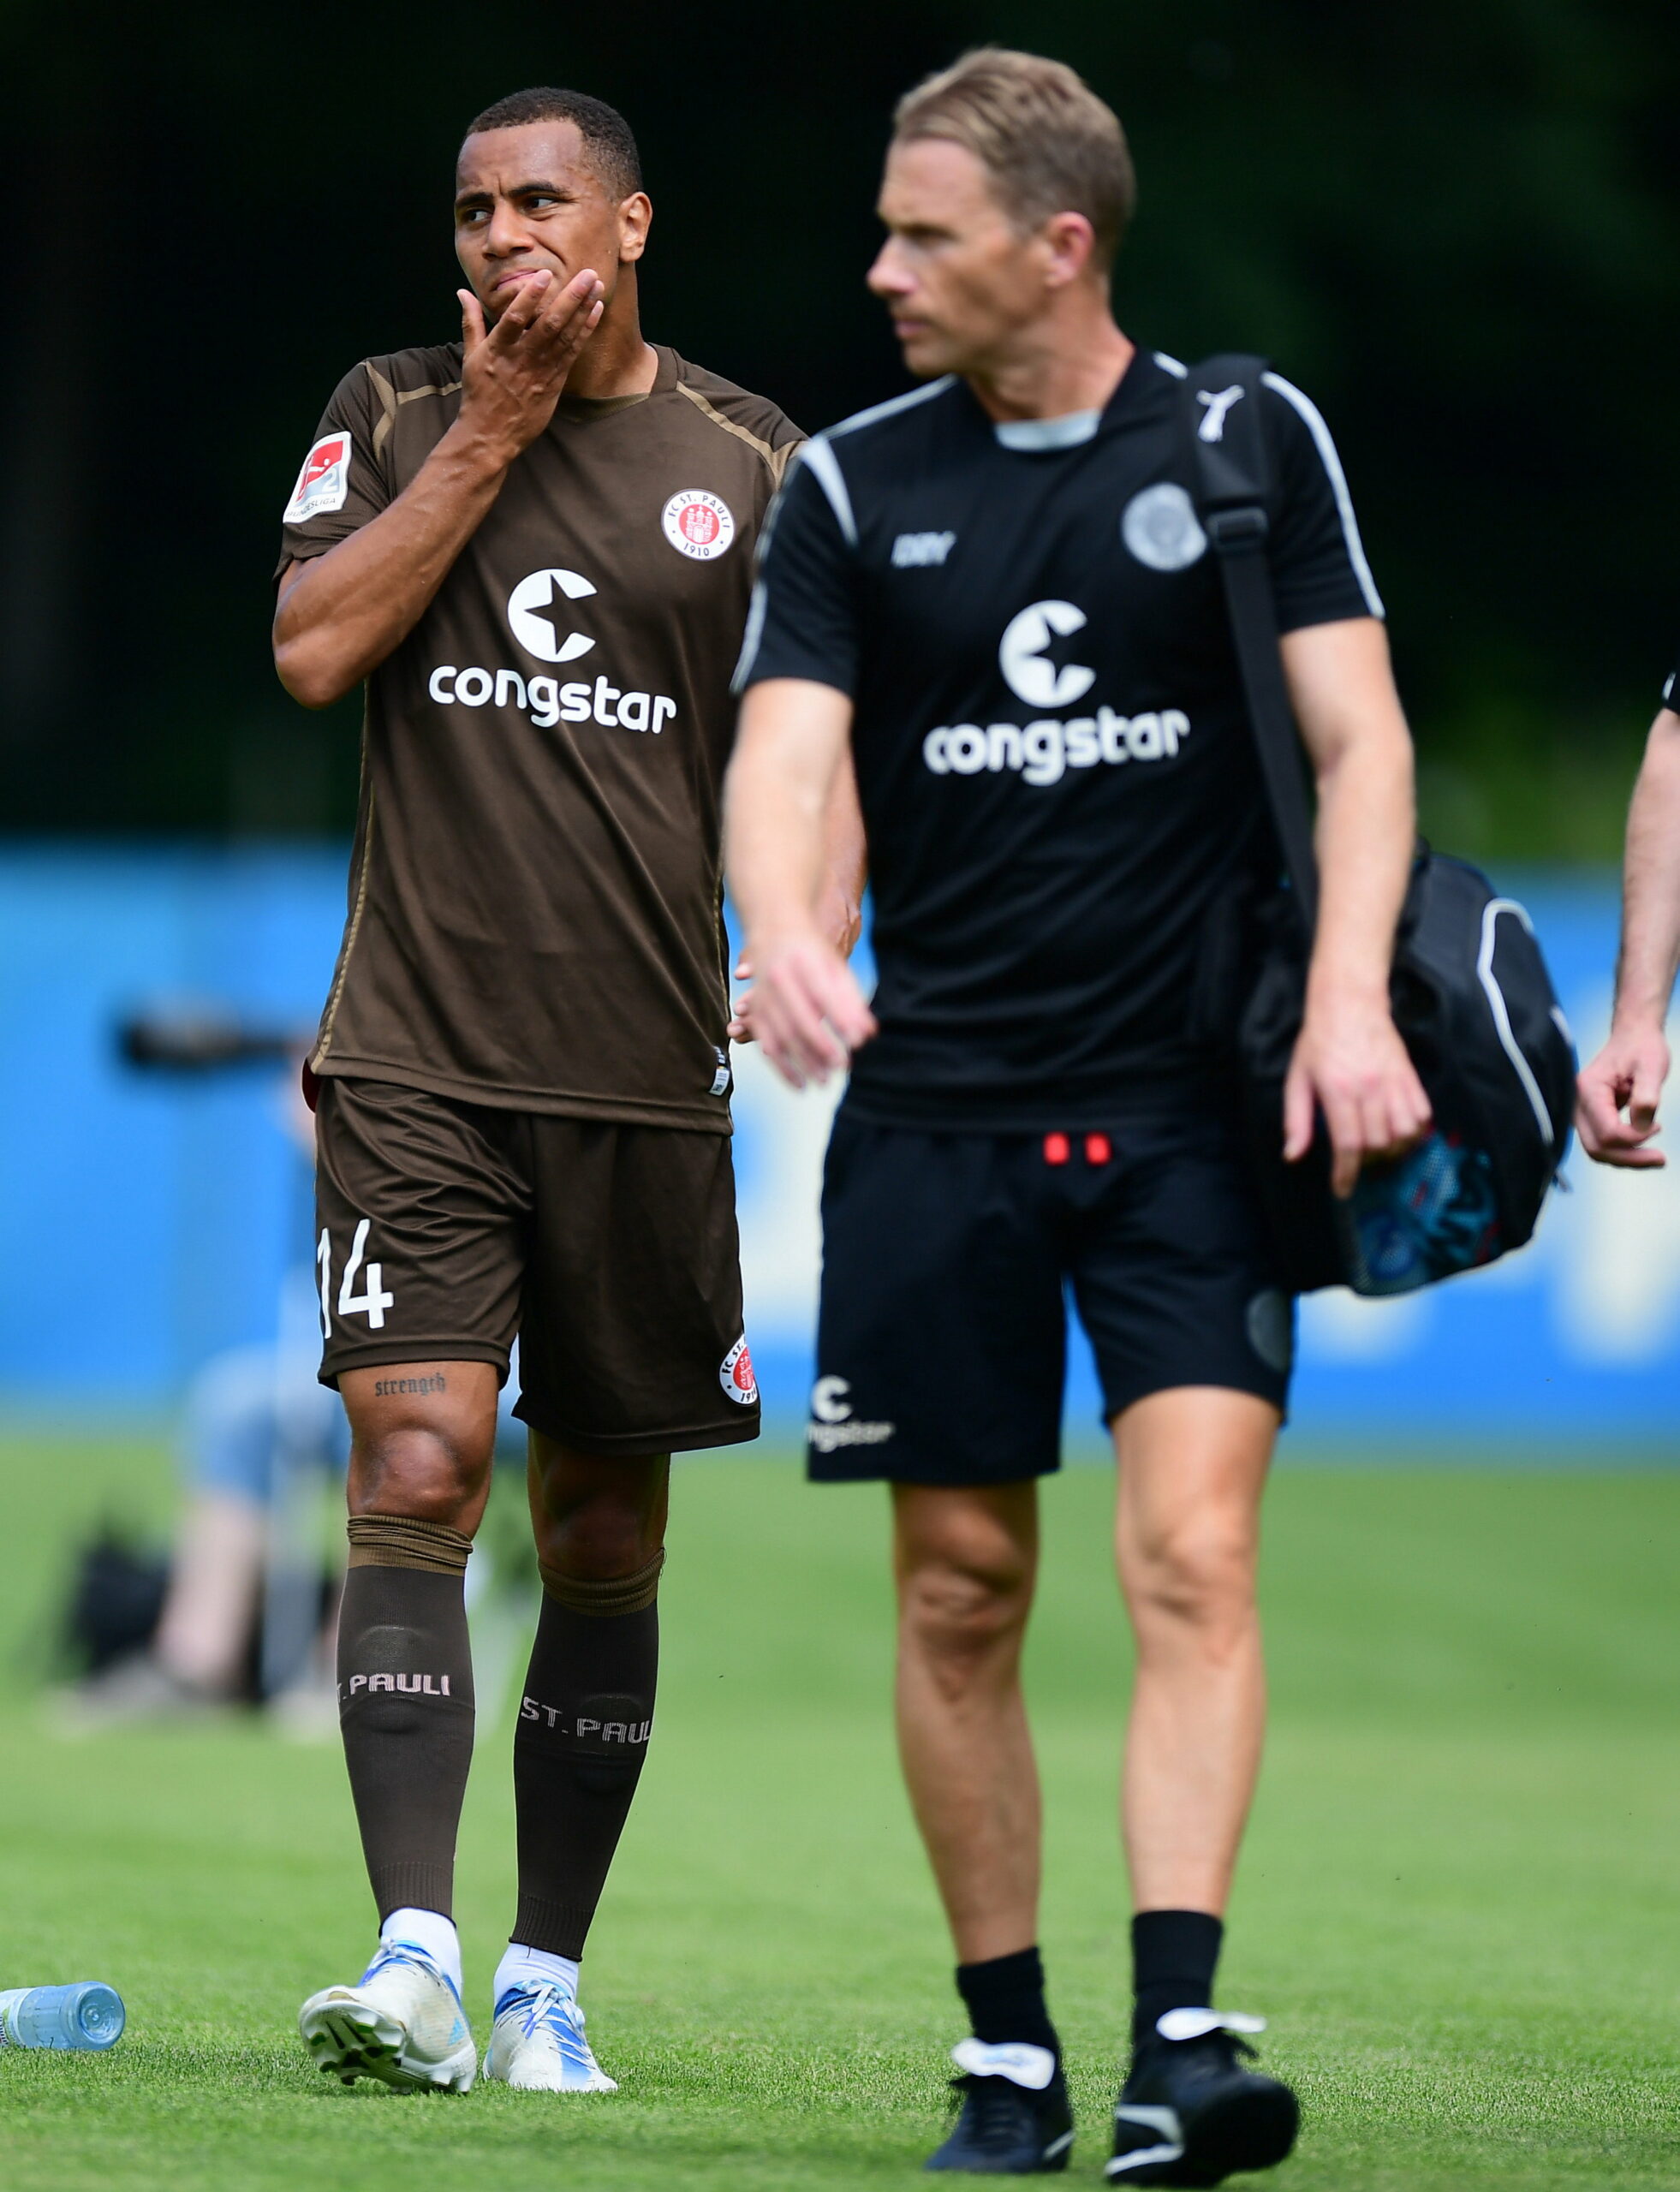 Verletzt im Kiel-Spiel: St. Pauli bangt um zwei wichtige Profis